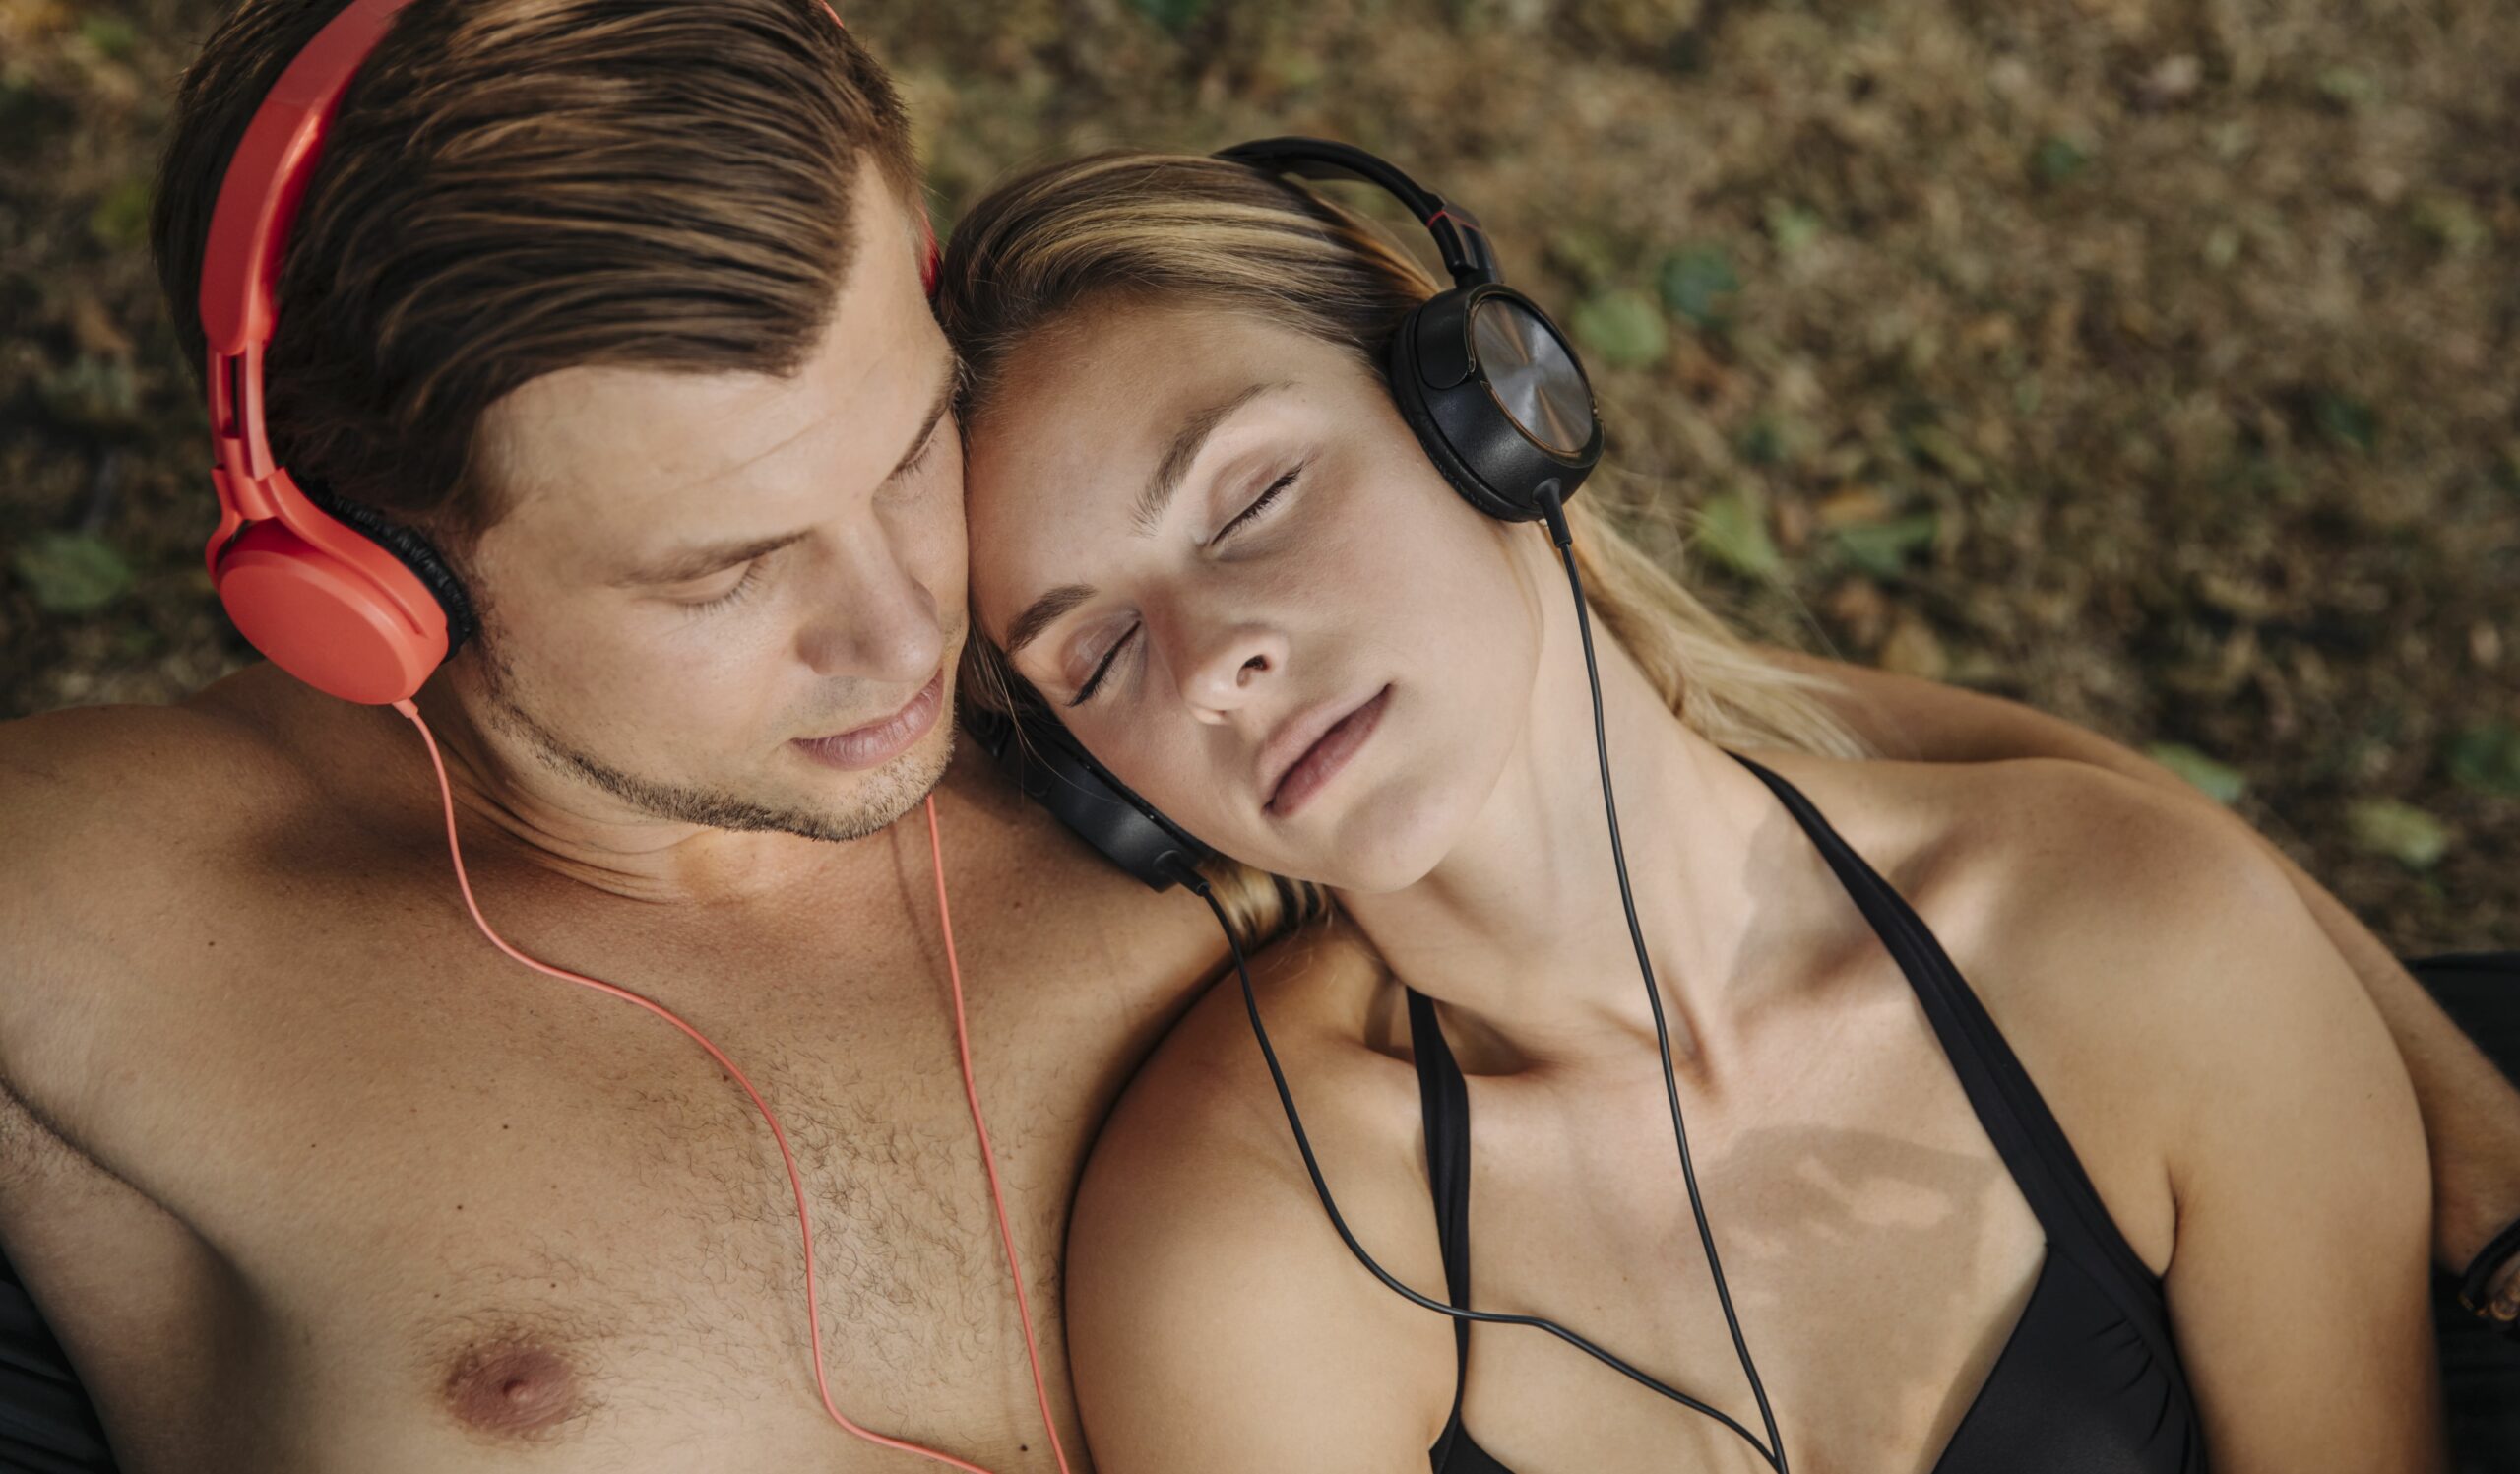 Möglicherweise kann der Spotify-Algorithmus eine entscheidende Sache nicht: Playlists fürs Liebesspiel zusammenstellen